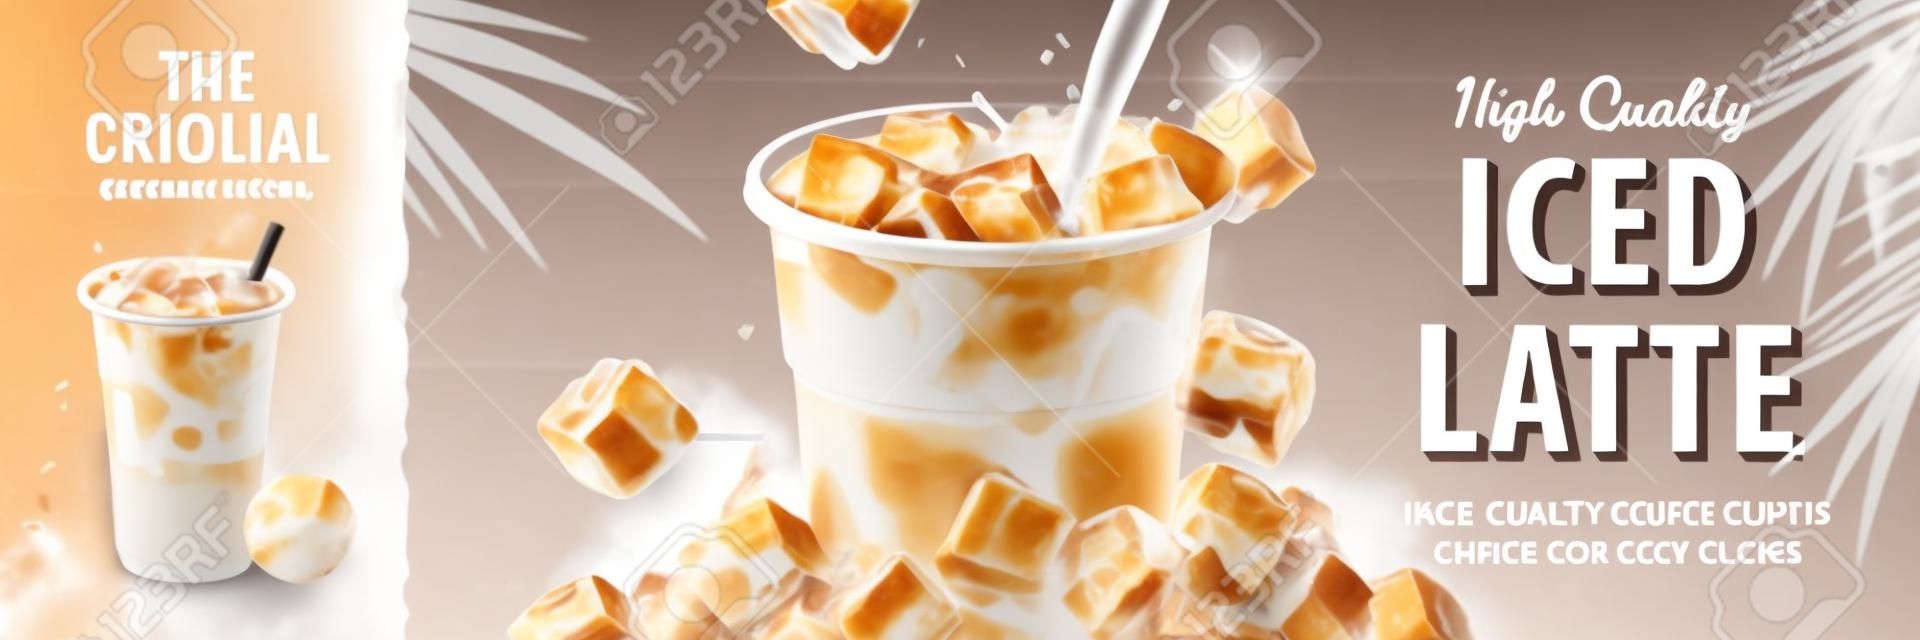 Iced latte banner met melk gieten in takeaway cup en ijsblokjes eromheen, 3d illustratie